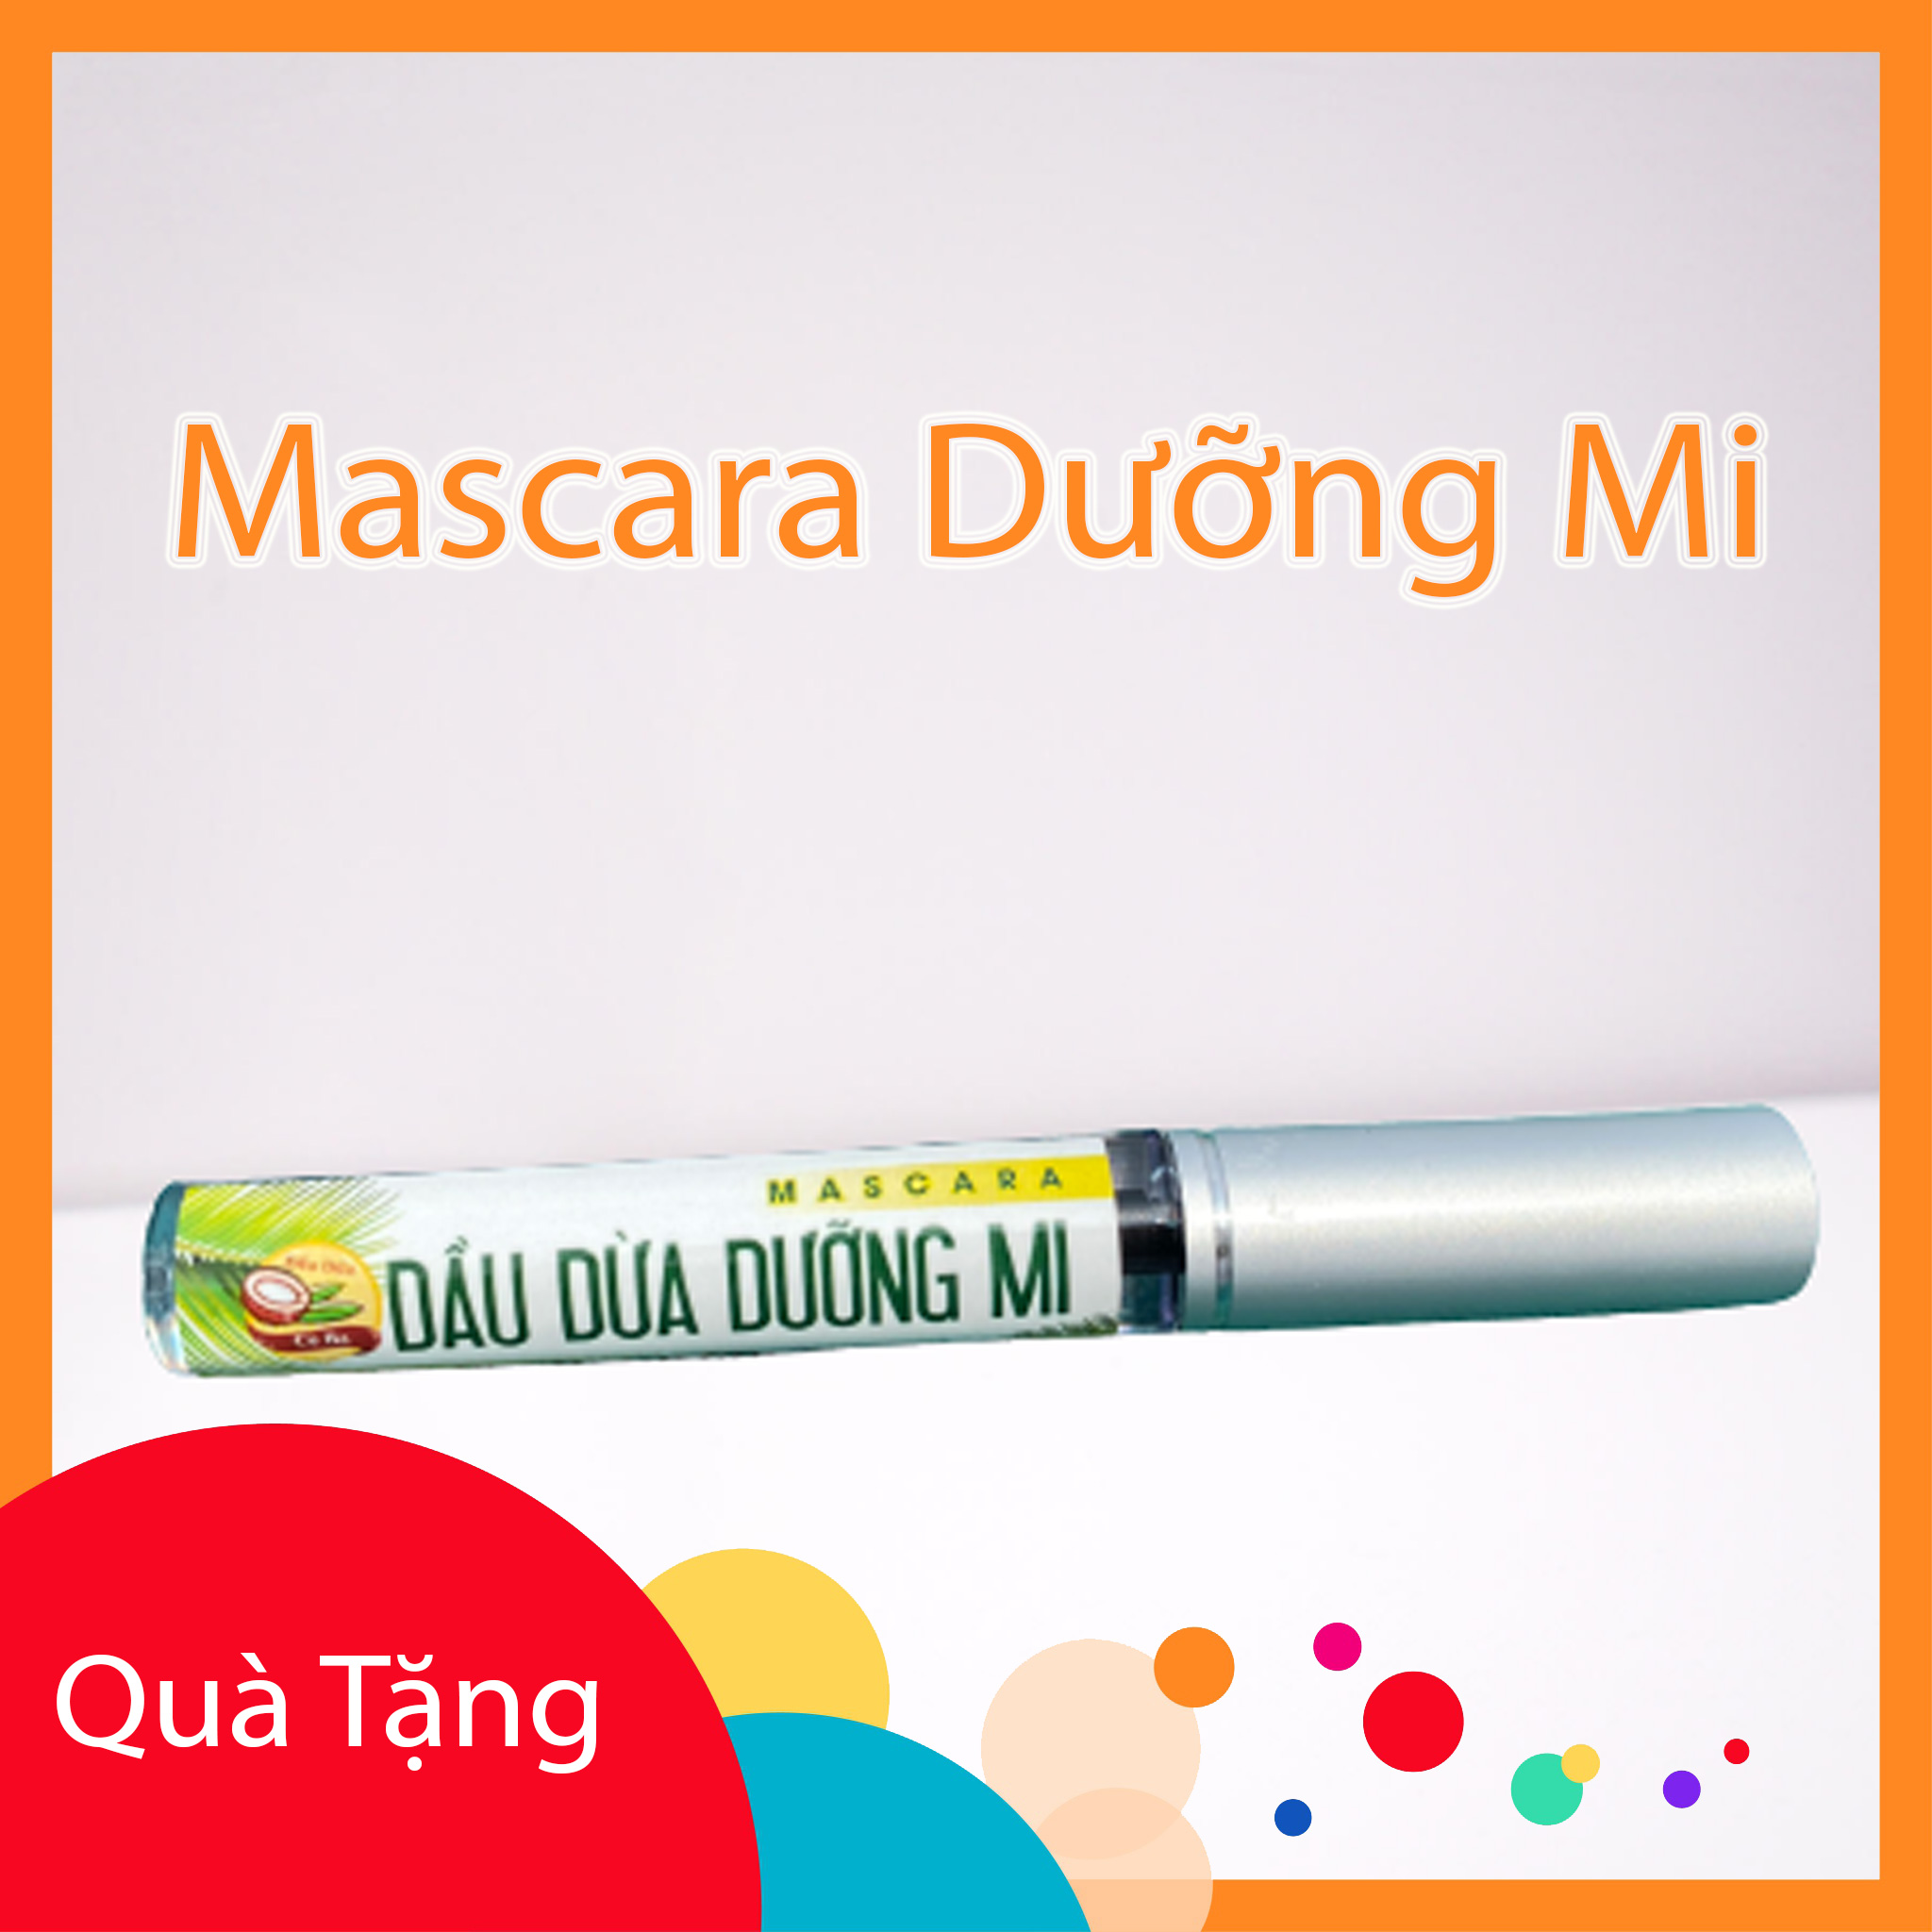 Combo 3 cây Mascara Dầu Dừa Nguyên Chất Dưỡng Mi Mắt Coconut nuôi dưỡng từ gốc đến ngọn, cải thiện tình trạng rụng và dưỡng mi chắc khỏe